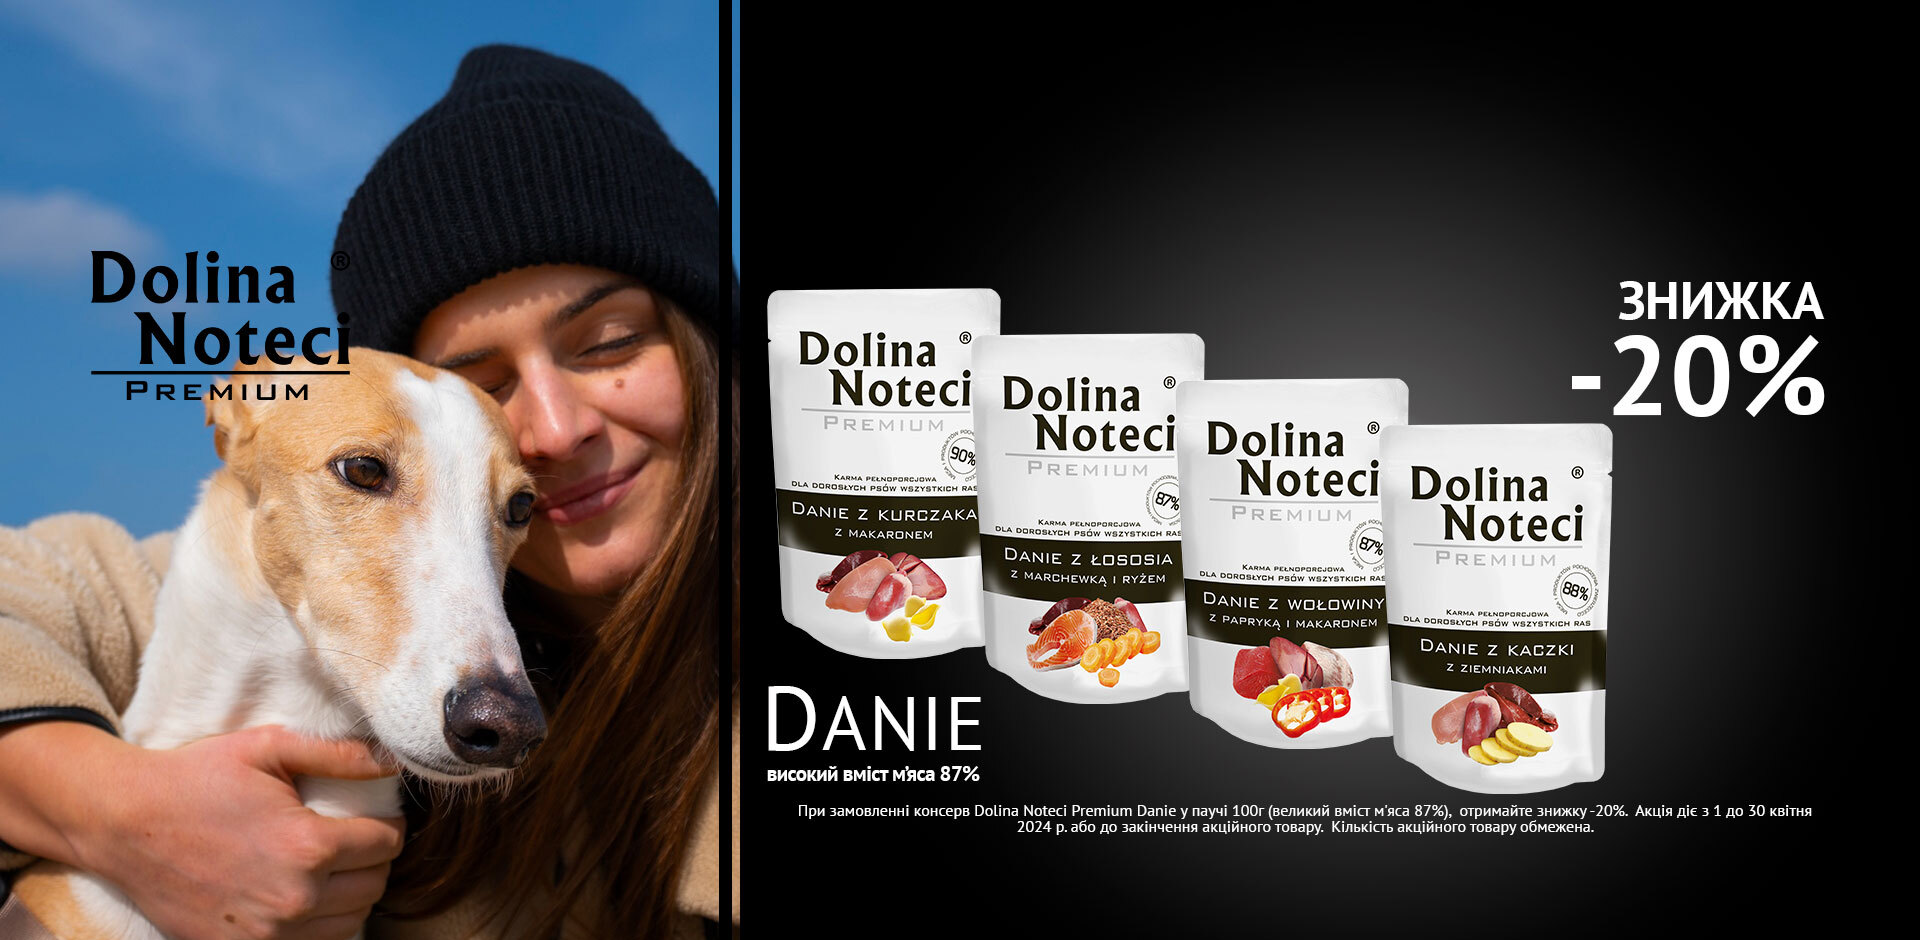 АКЦІЯ на консерви Dolina Noteci Premium Danie у паучі 100гр (великий вміст м'яса 87%): ЗНИЖКА -20%